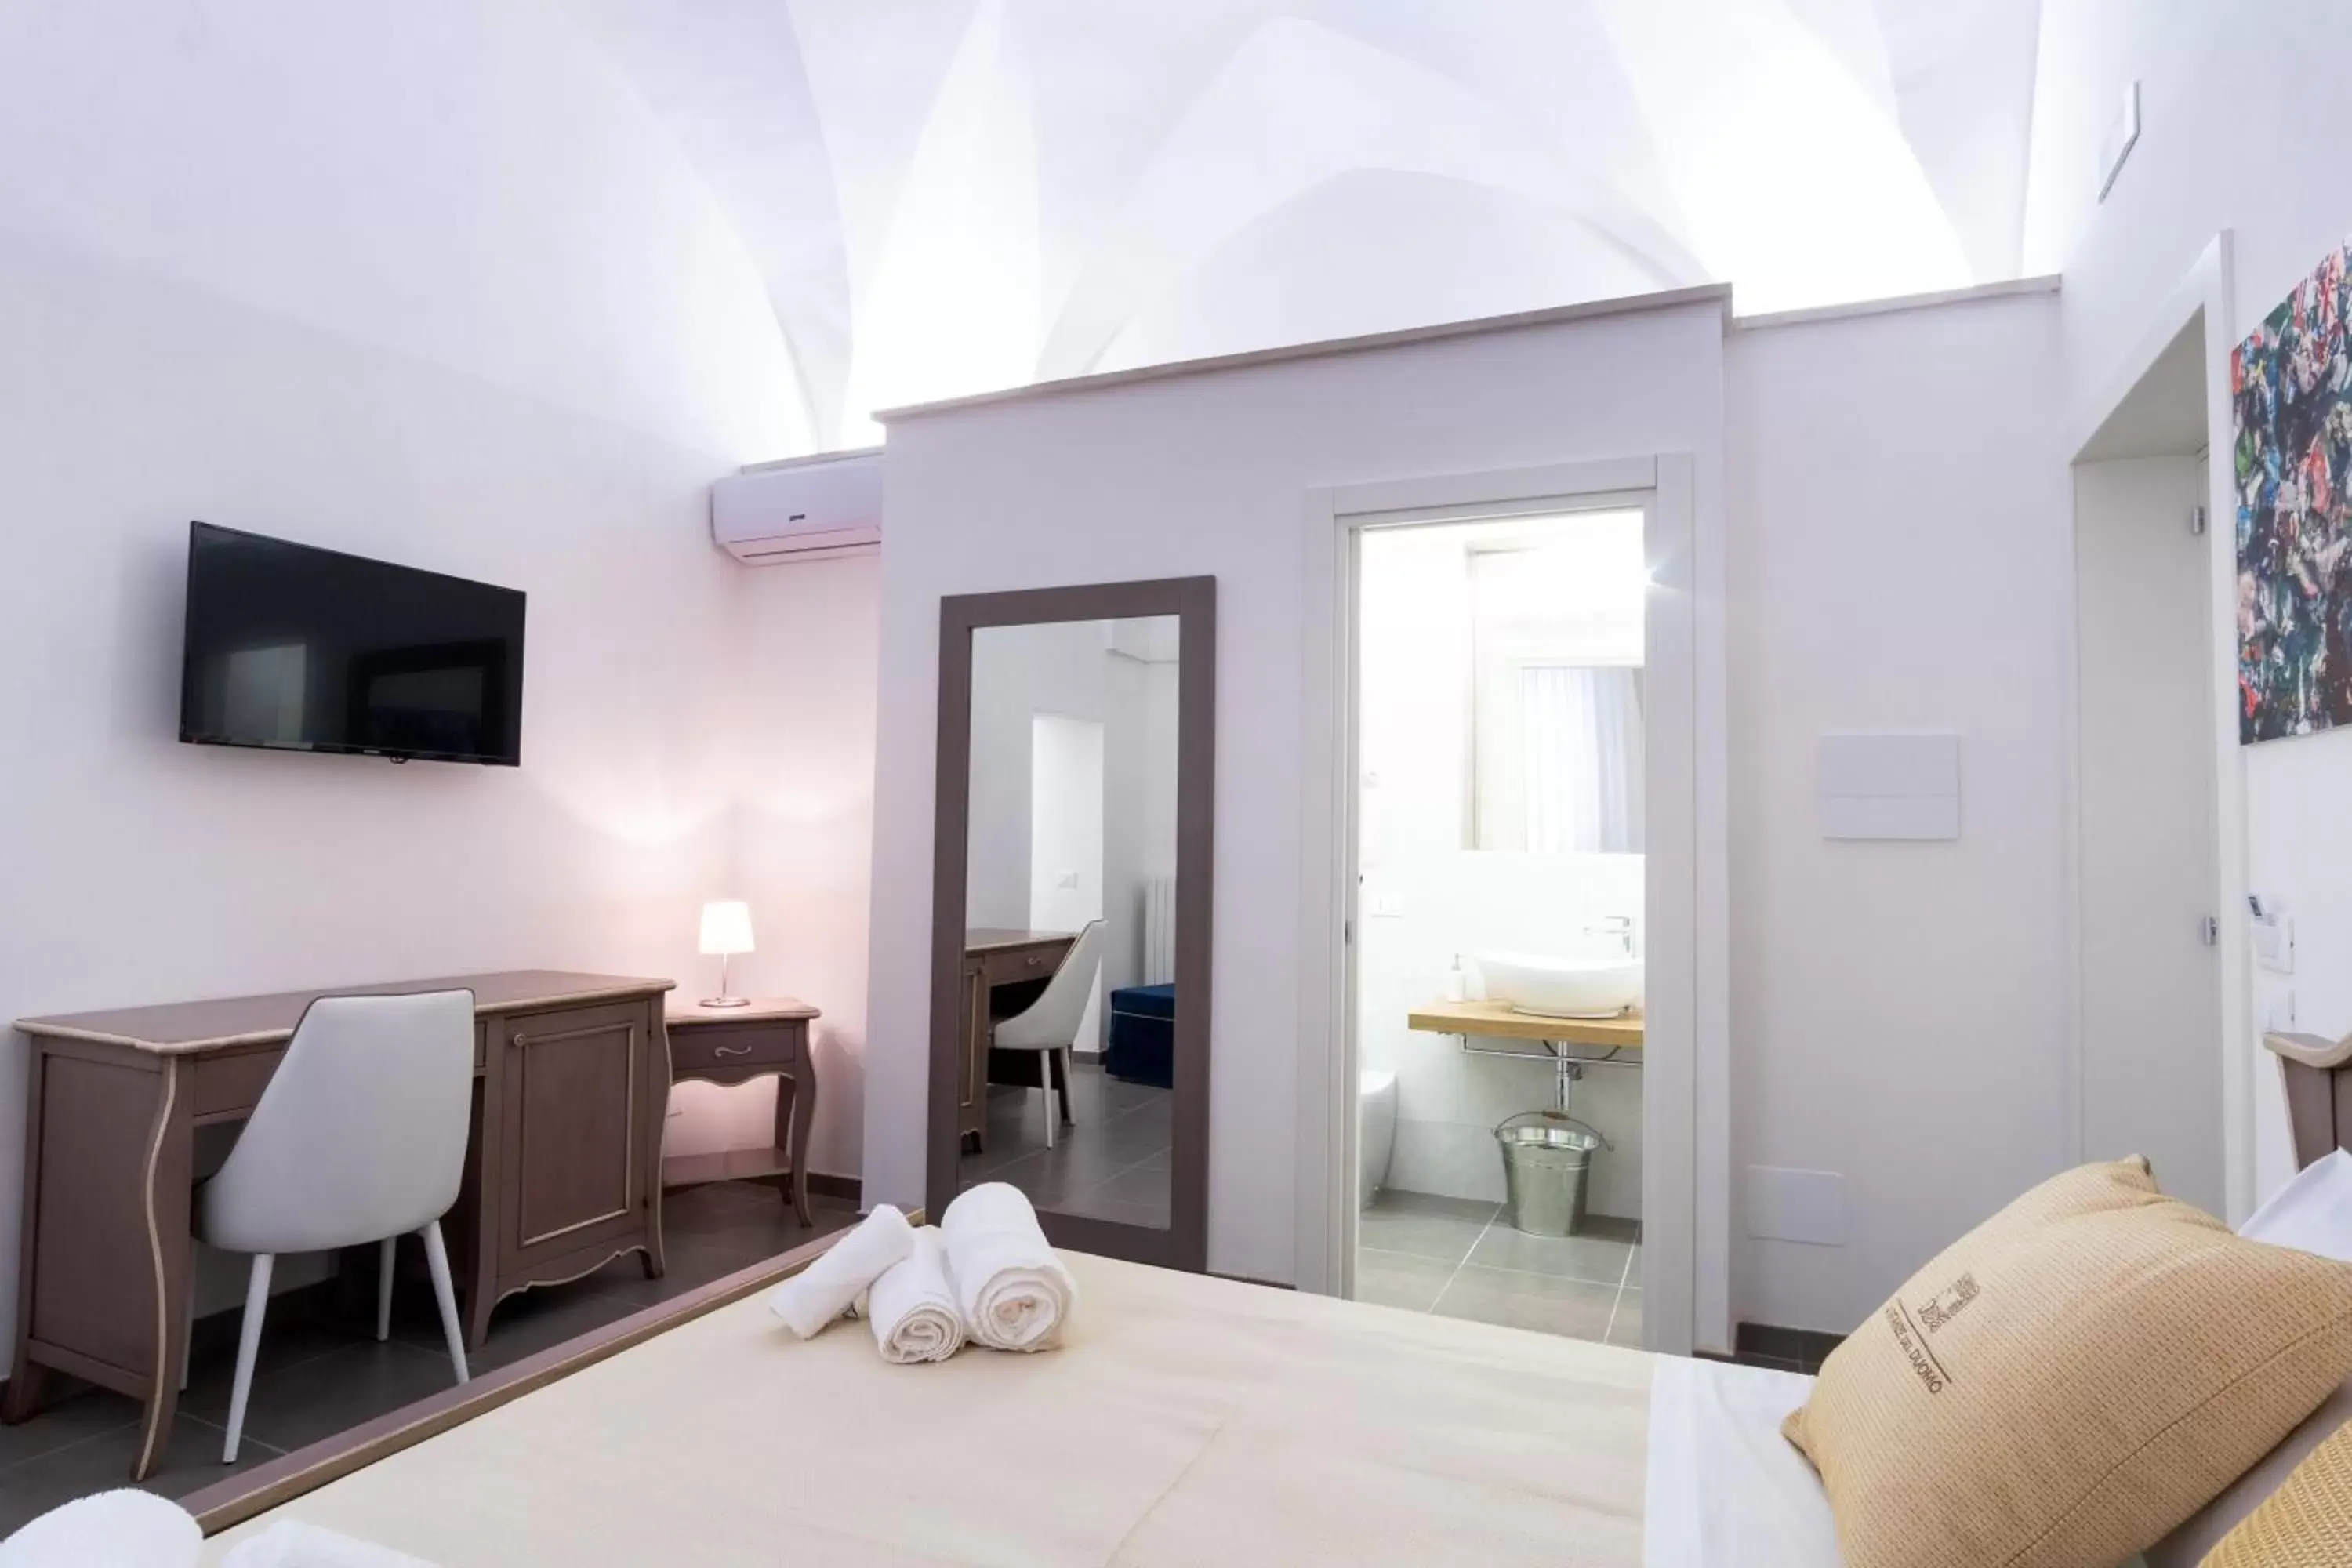 Toilet, Bed in Le Stanze Del Duomo